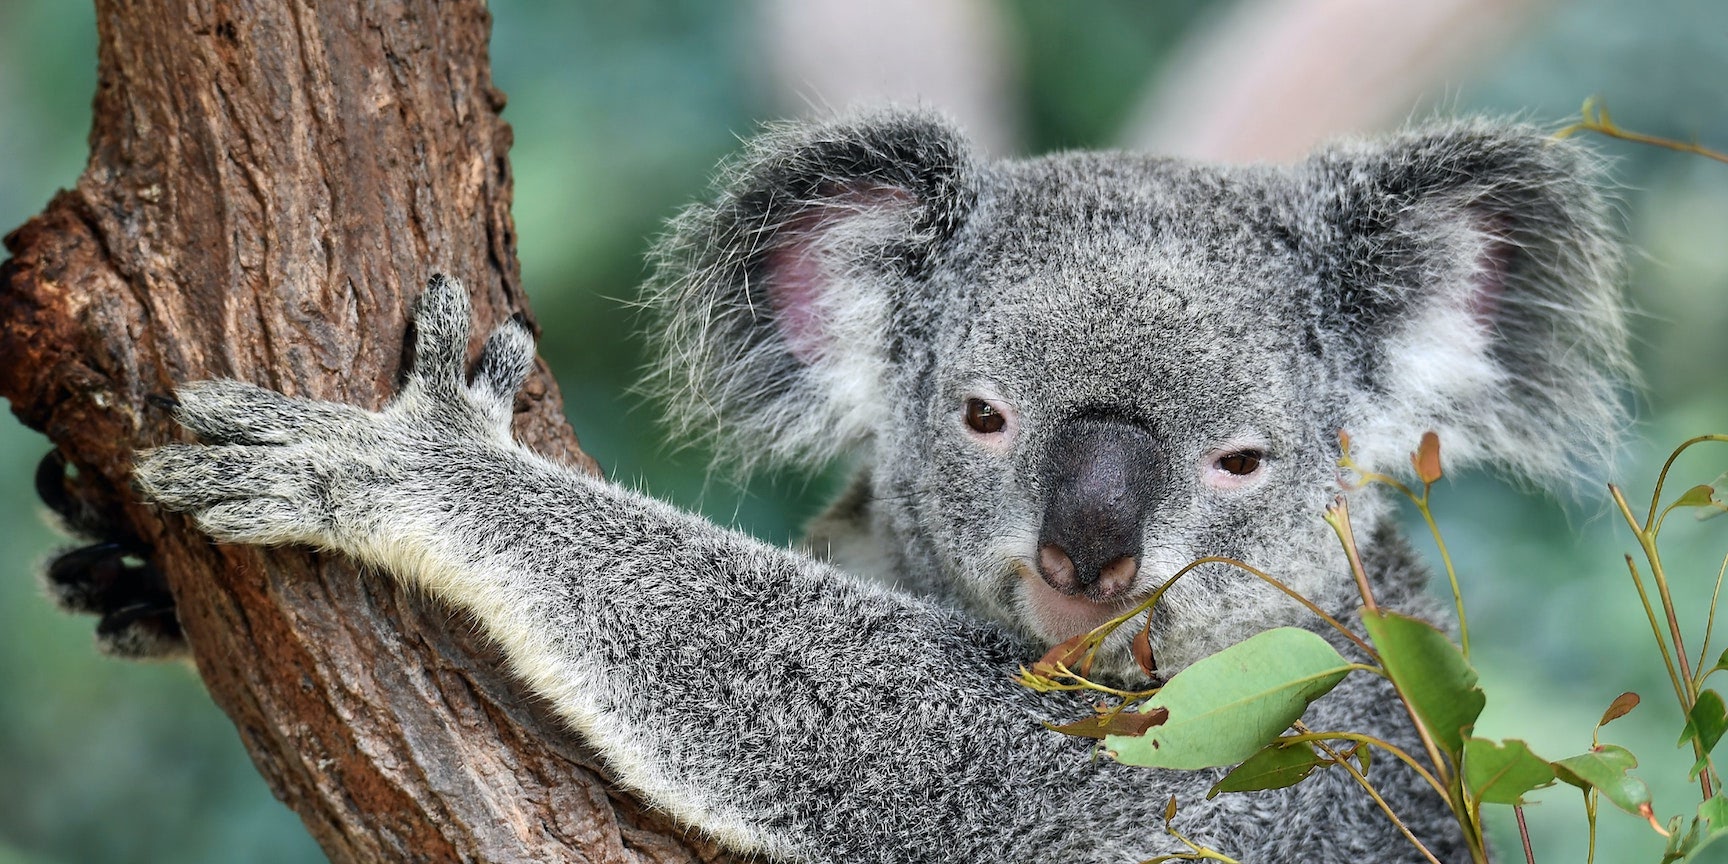 Koala spirit animal : Symbolism and meaning